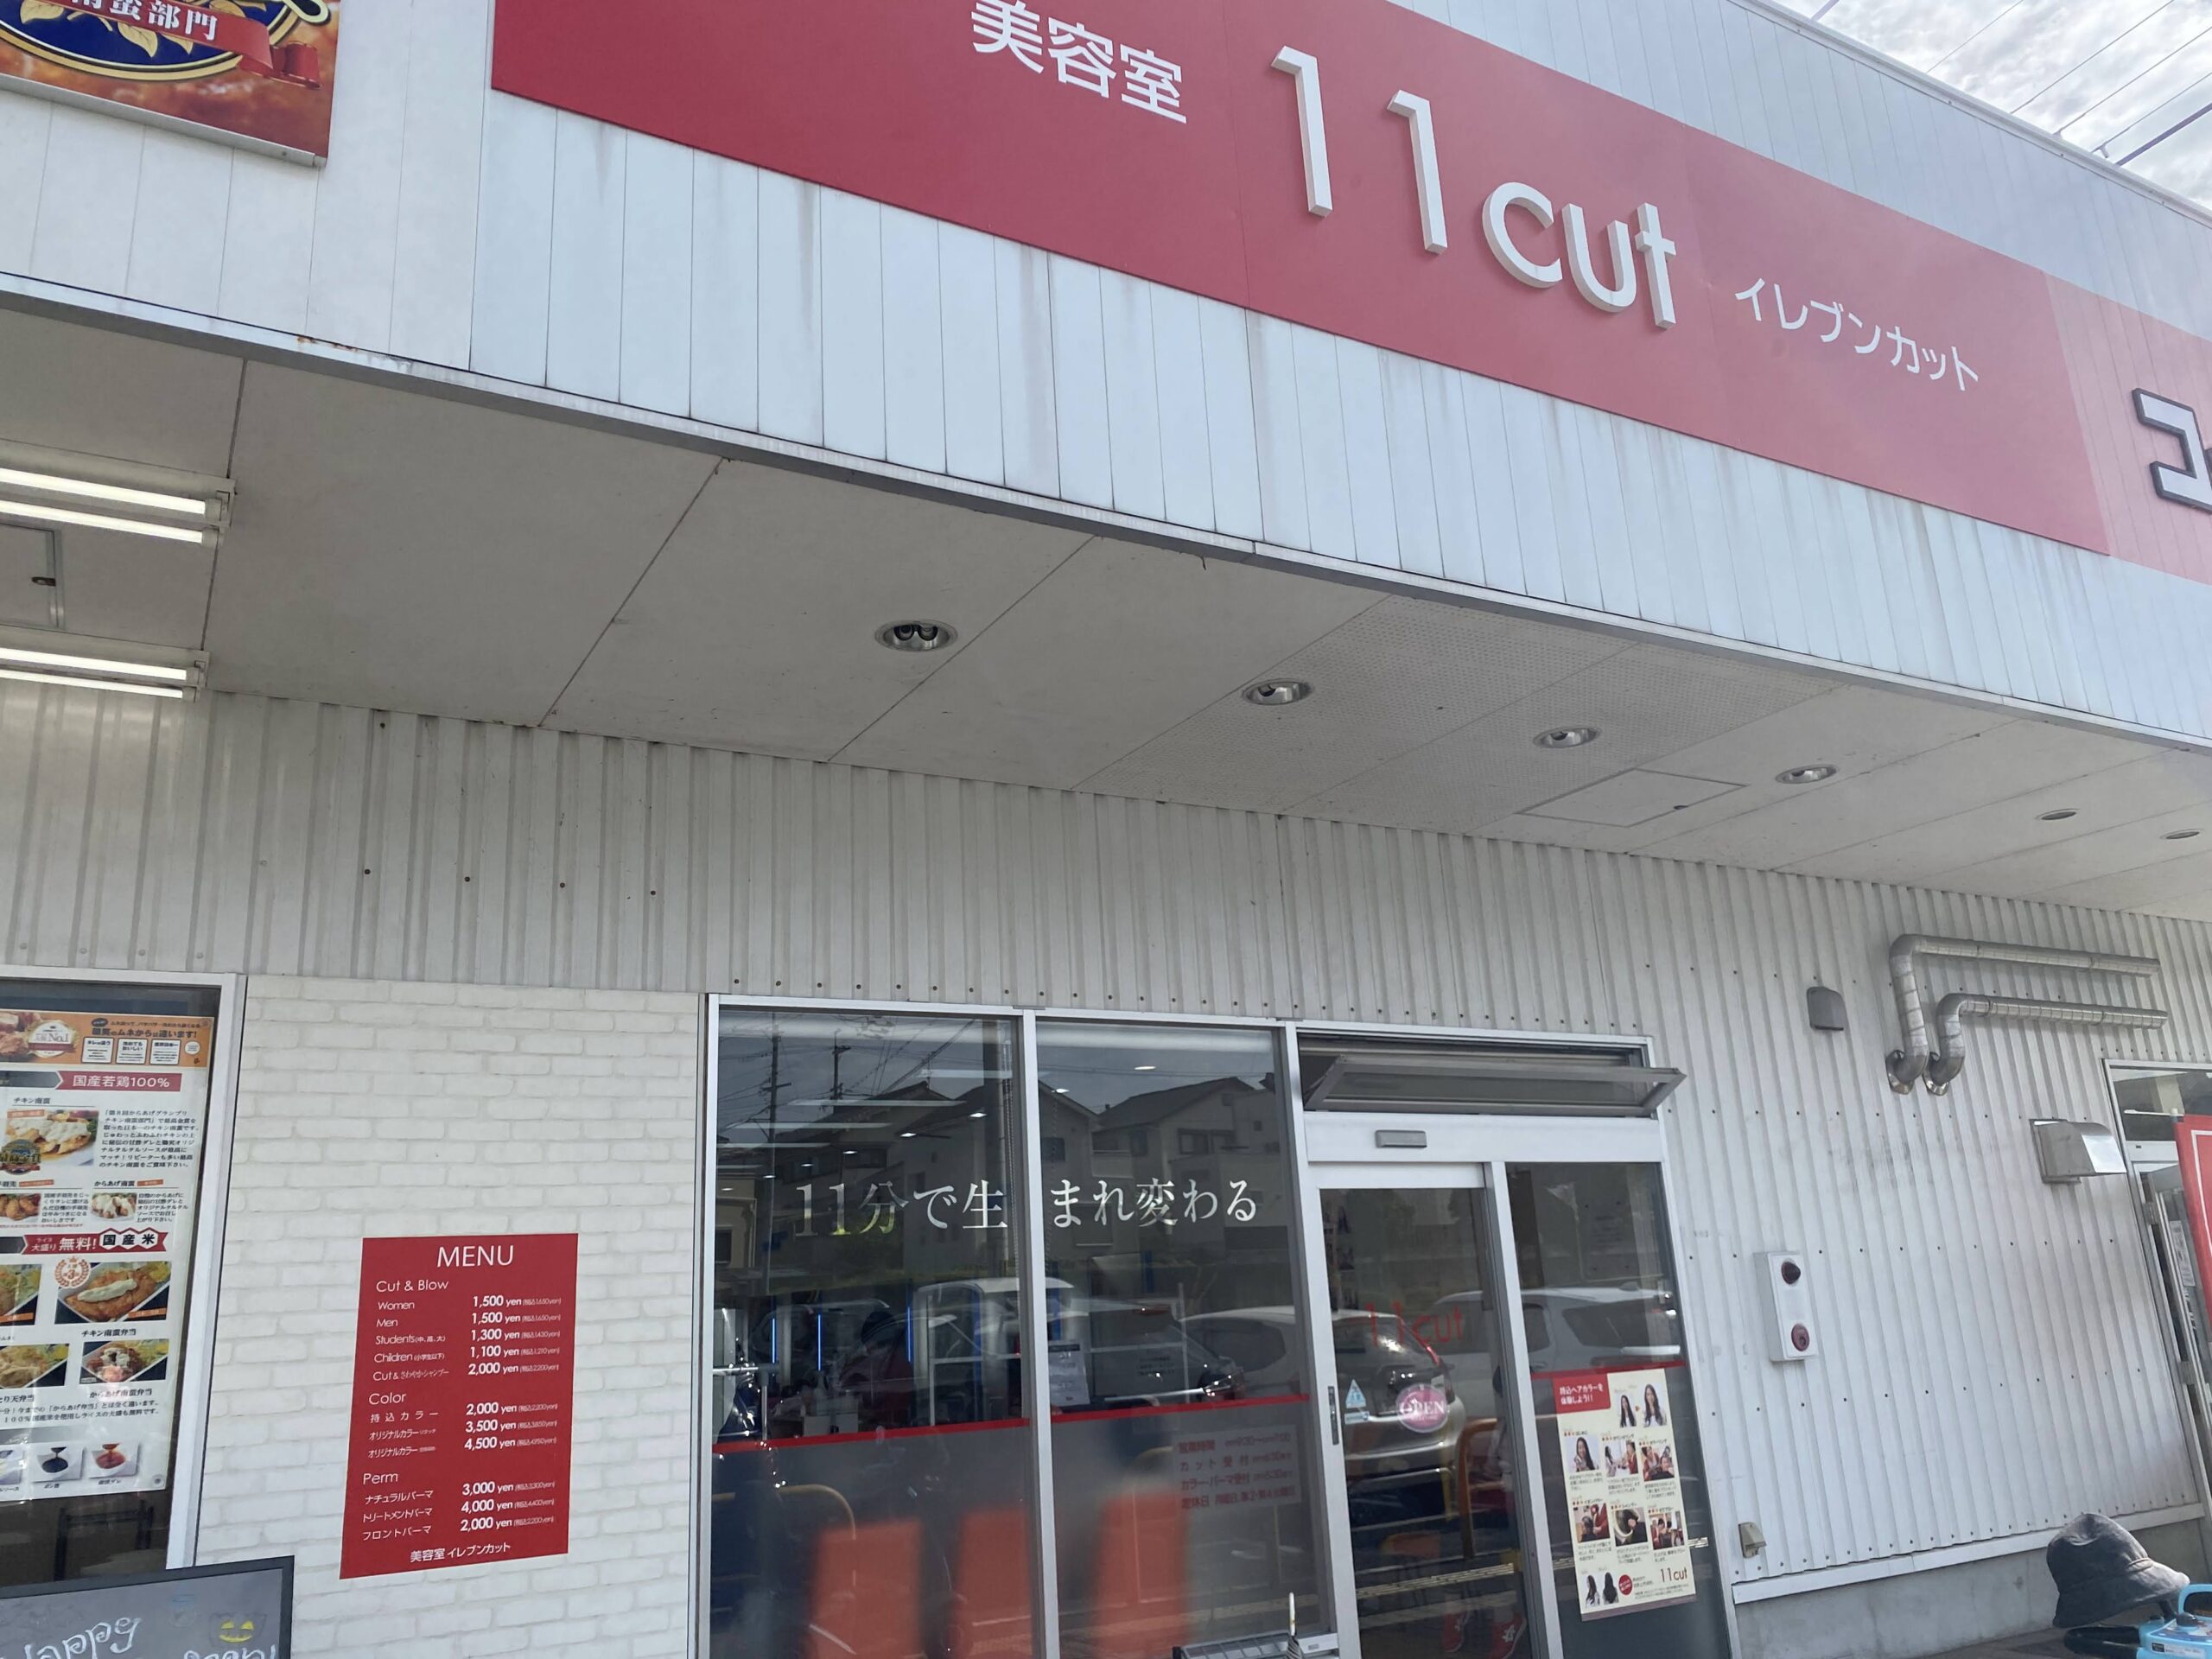 店舗情報 イレブンカット宝来店10 31閉店 すくらんぶる奈良